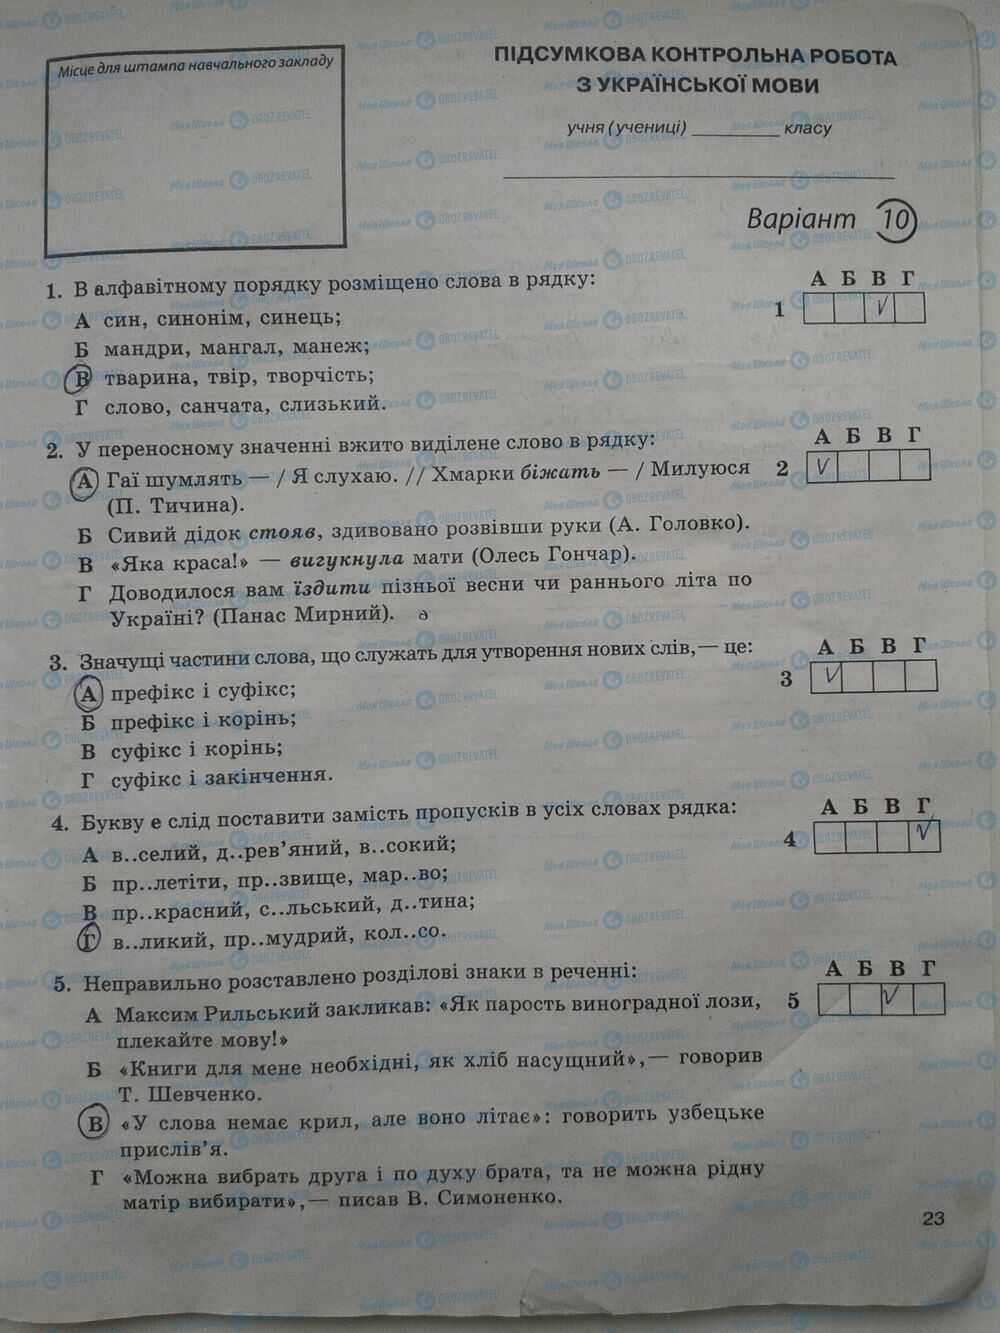 ГДЗ Укр мова 5 класс страница стр. 23